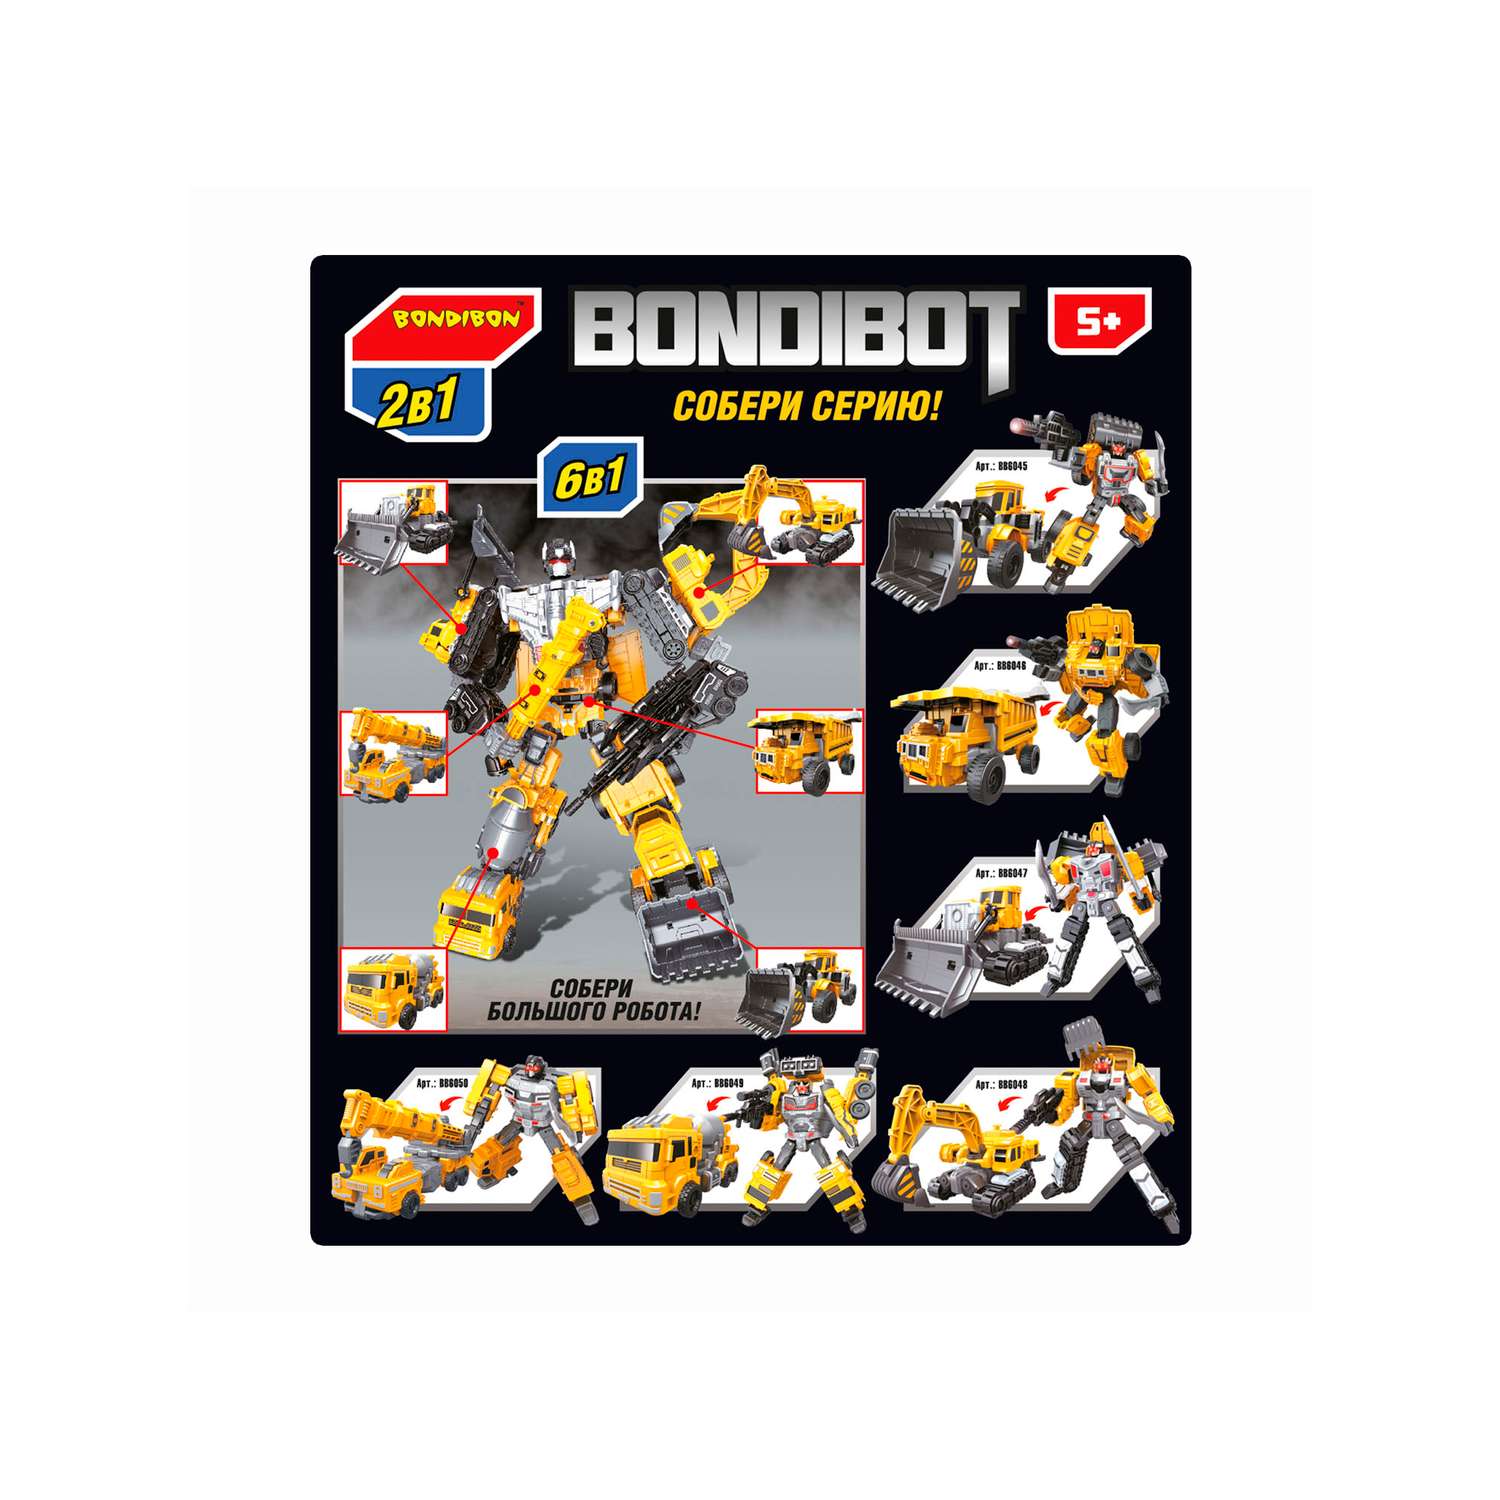 Трансформер BONDIBON BONDIBOT 2в1 робот- гусеничный бульдозер 6в1 желтого цвета - фото 12